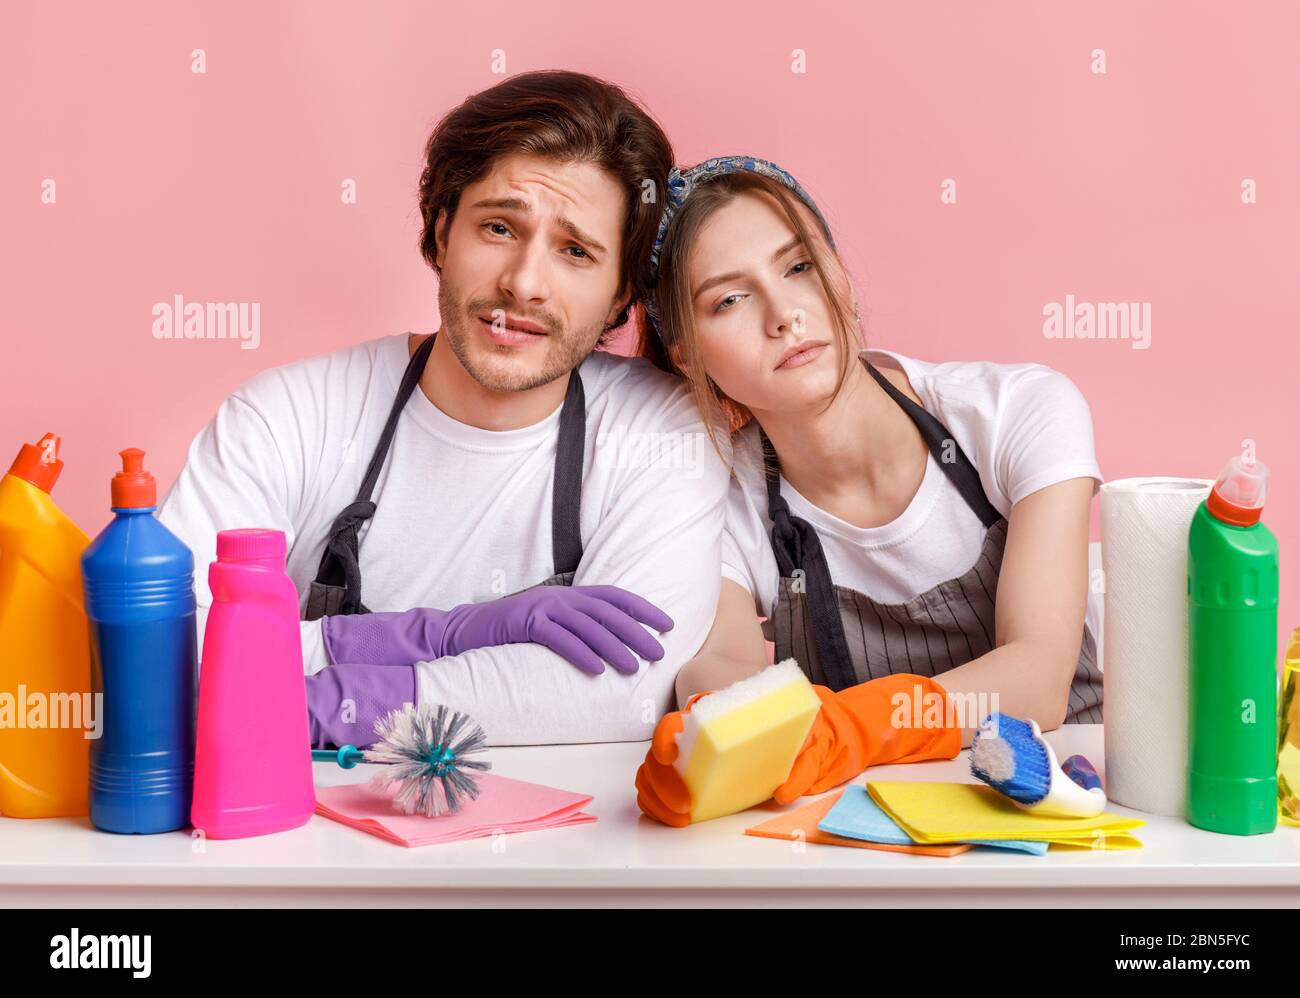 Unangenehme Hausarbeit. Unzufrieden Paar am Tisch mit vielen Waschmitteln sitzen Stockfoto